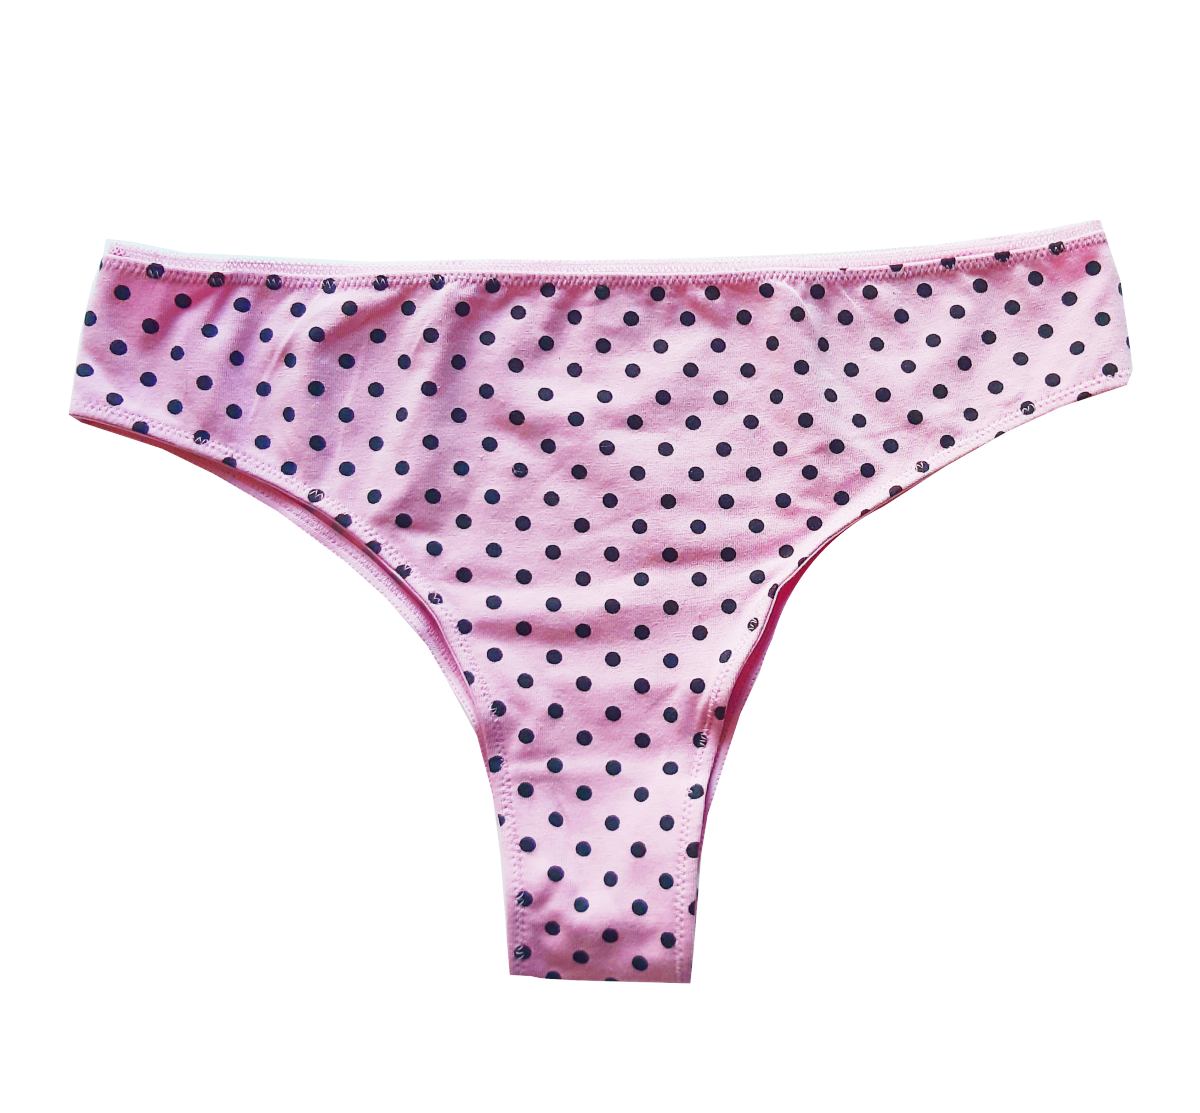 Laura Biagiotti 92076 růžové dámské brazilské kalhotky Barva: růžová, Velikost: S